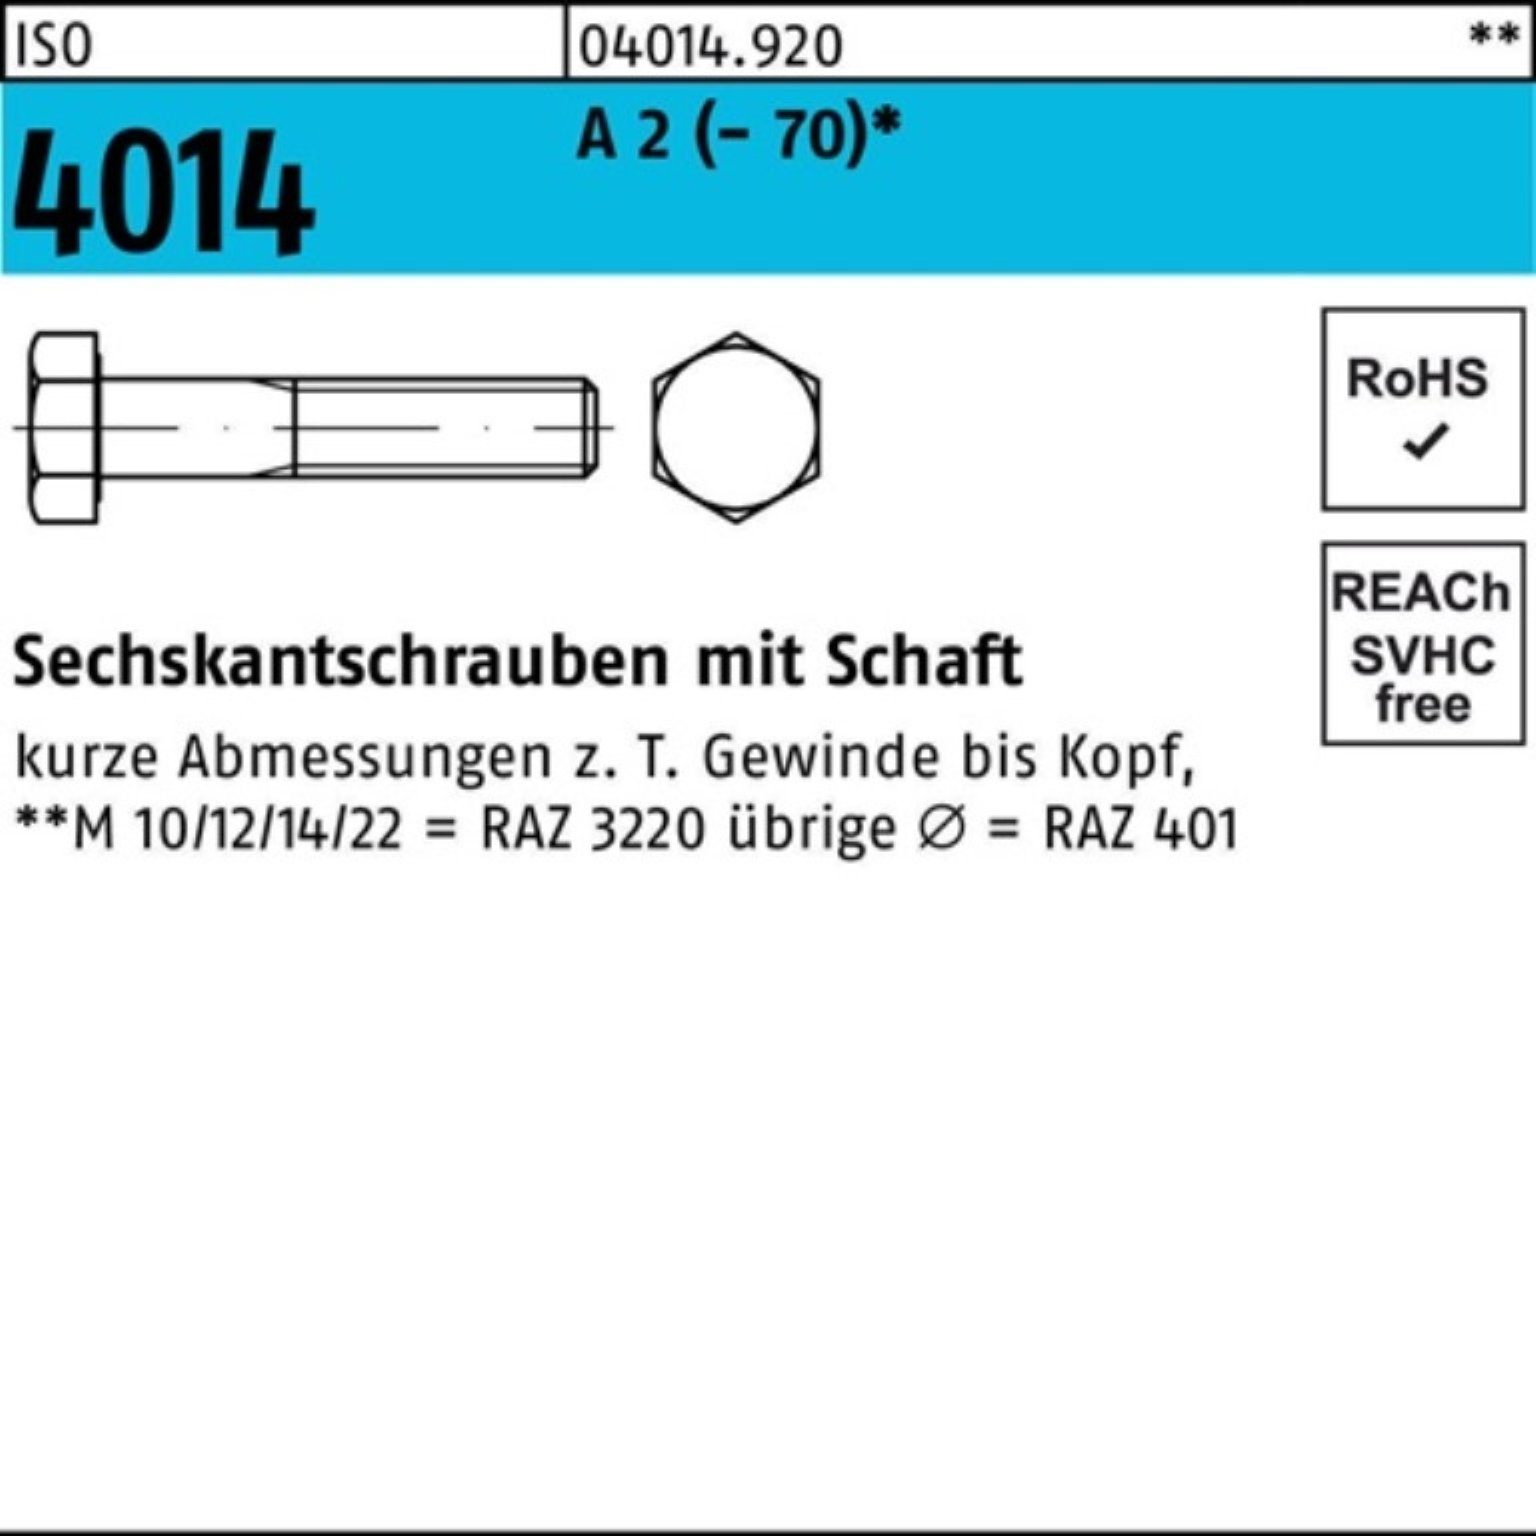 Bufab Sechskantschraube 100er Pack Sechskantschraube ISO 4014 Schaft M12x 40 A 2 (70) 50 St